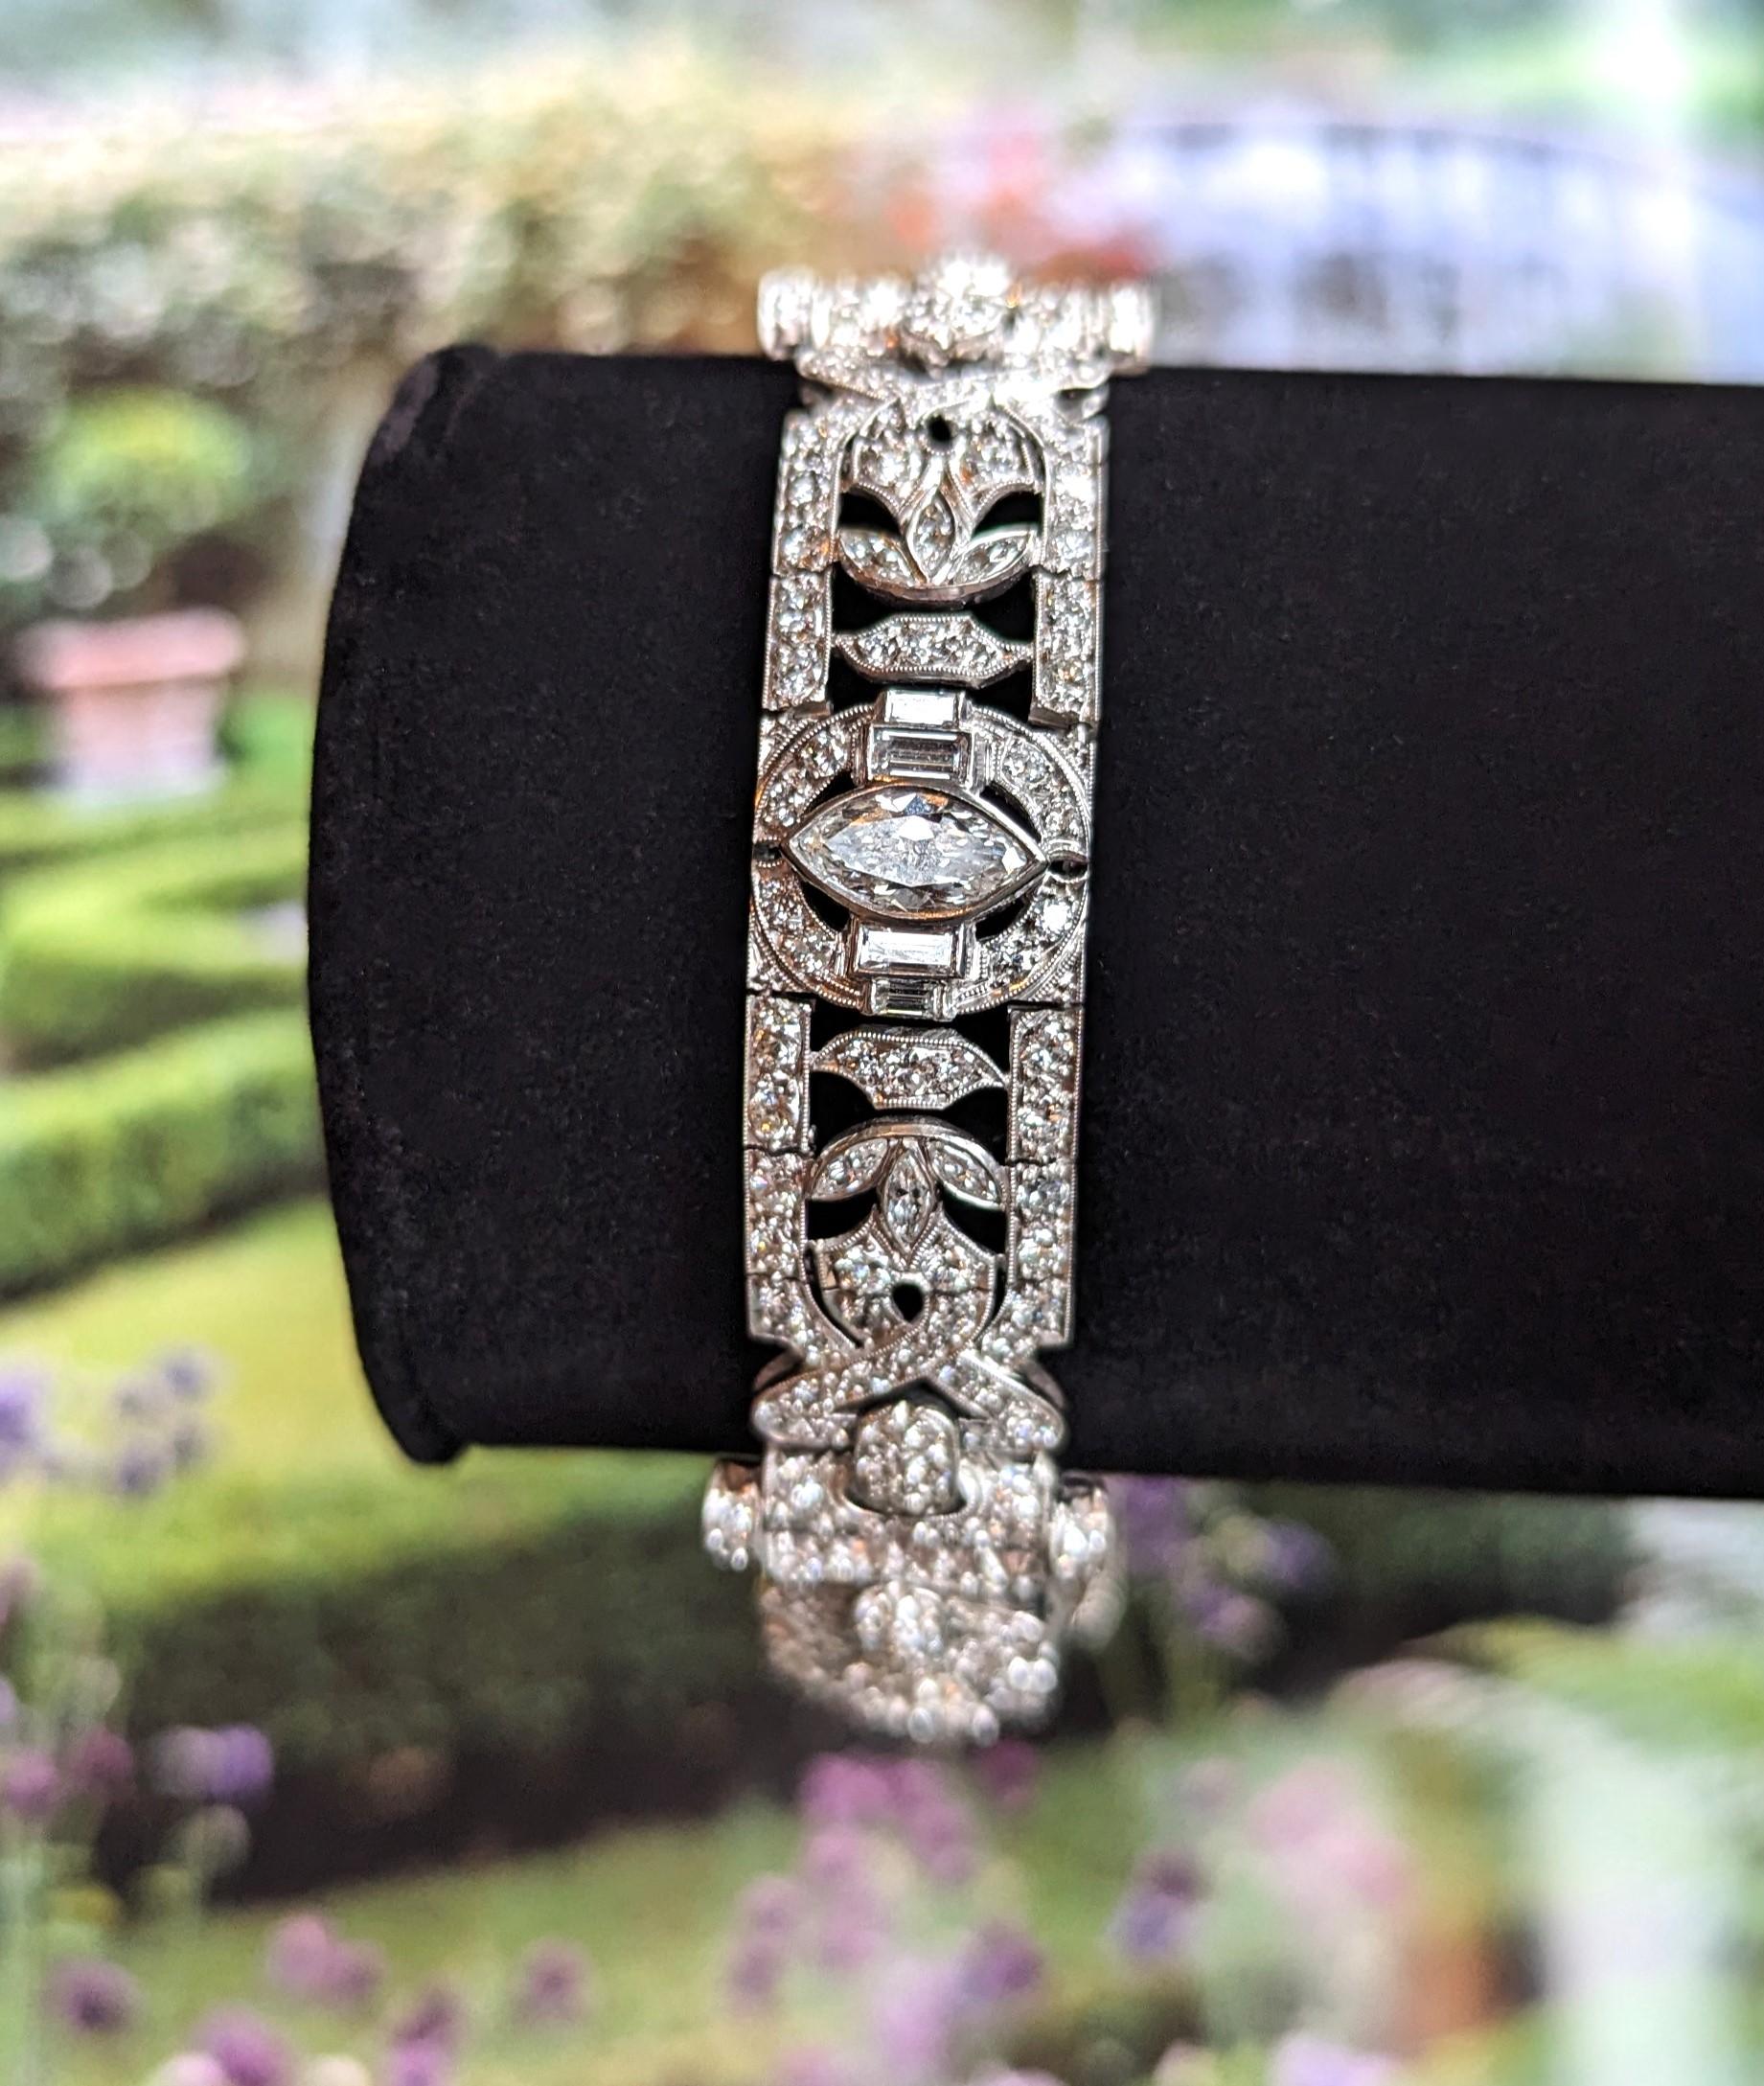 Art-Deco-Diamant-Gliederarmband für Damen aus Platin, nicht gestempelt oder markiert. Gewicht 22,3 Pfenniggewichte, gegossene und handmontierte Konstruktion, glänzende Oberfläche, Verarbeitung mit viel Liebe zum Detail. Die Fassungen sind sicher,